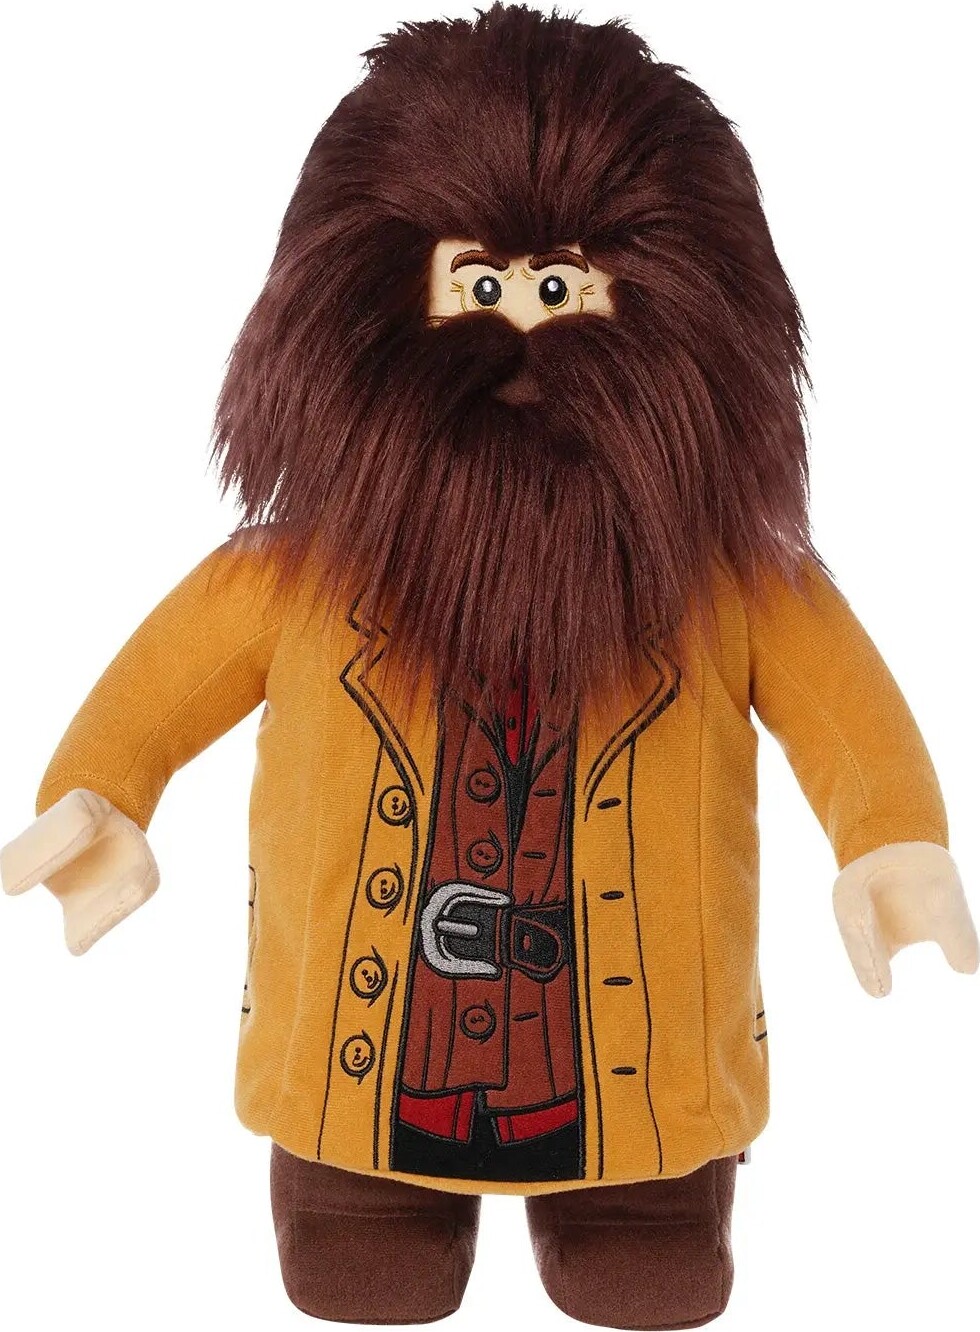 #2 - Lego - Hagrid Bamse - Harry Potter - 43 Cm